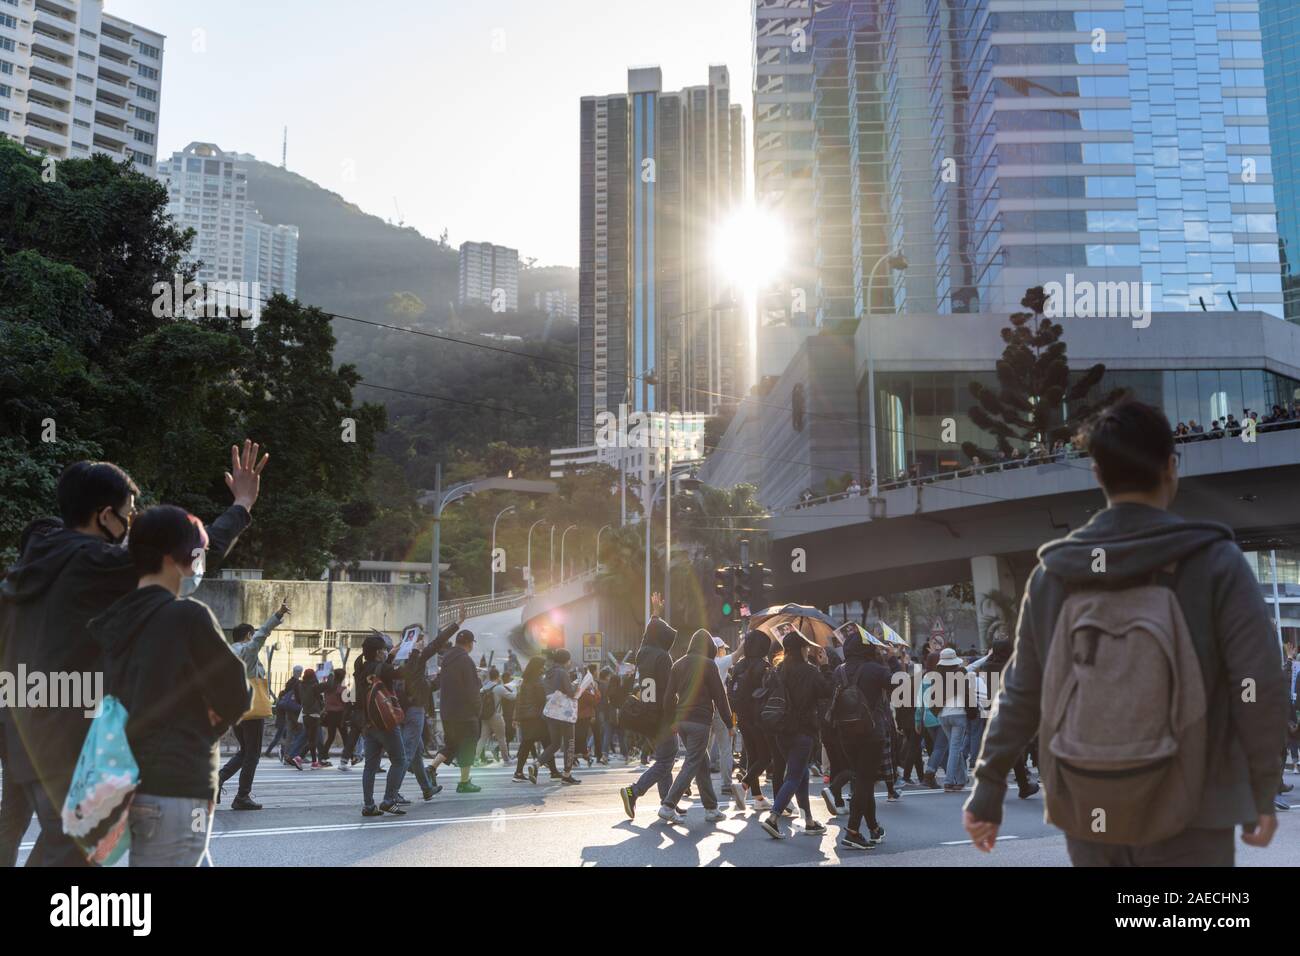 La Isla de Hong Kong, Hong Kong - Dec 8, 2019: carta internacional de los Derechos Humanos protesta en Hong Kong, 0,8 millones de personas en la calle contra la policía Foto de stock